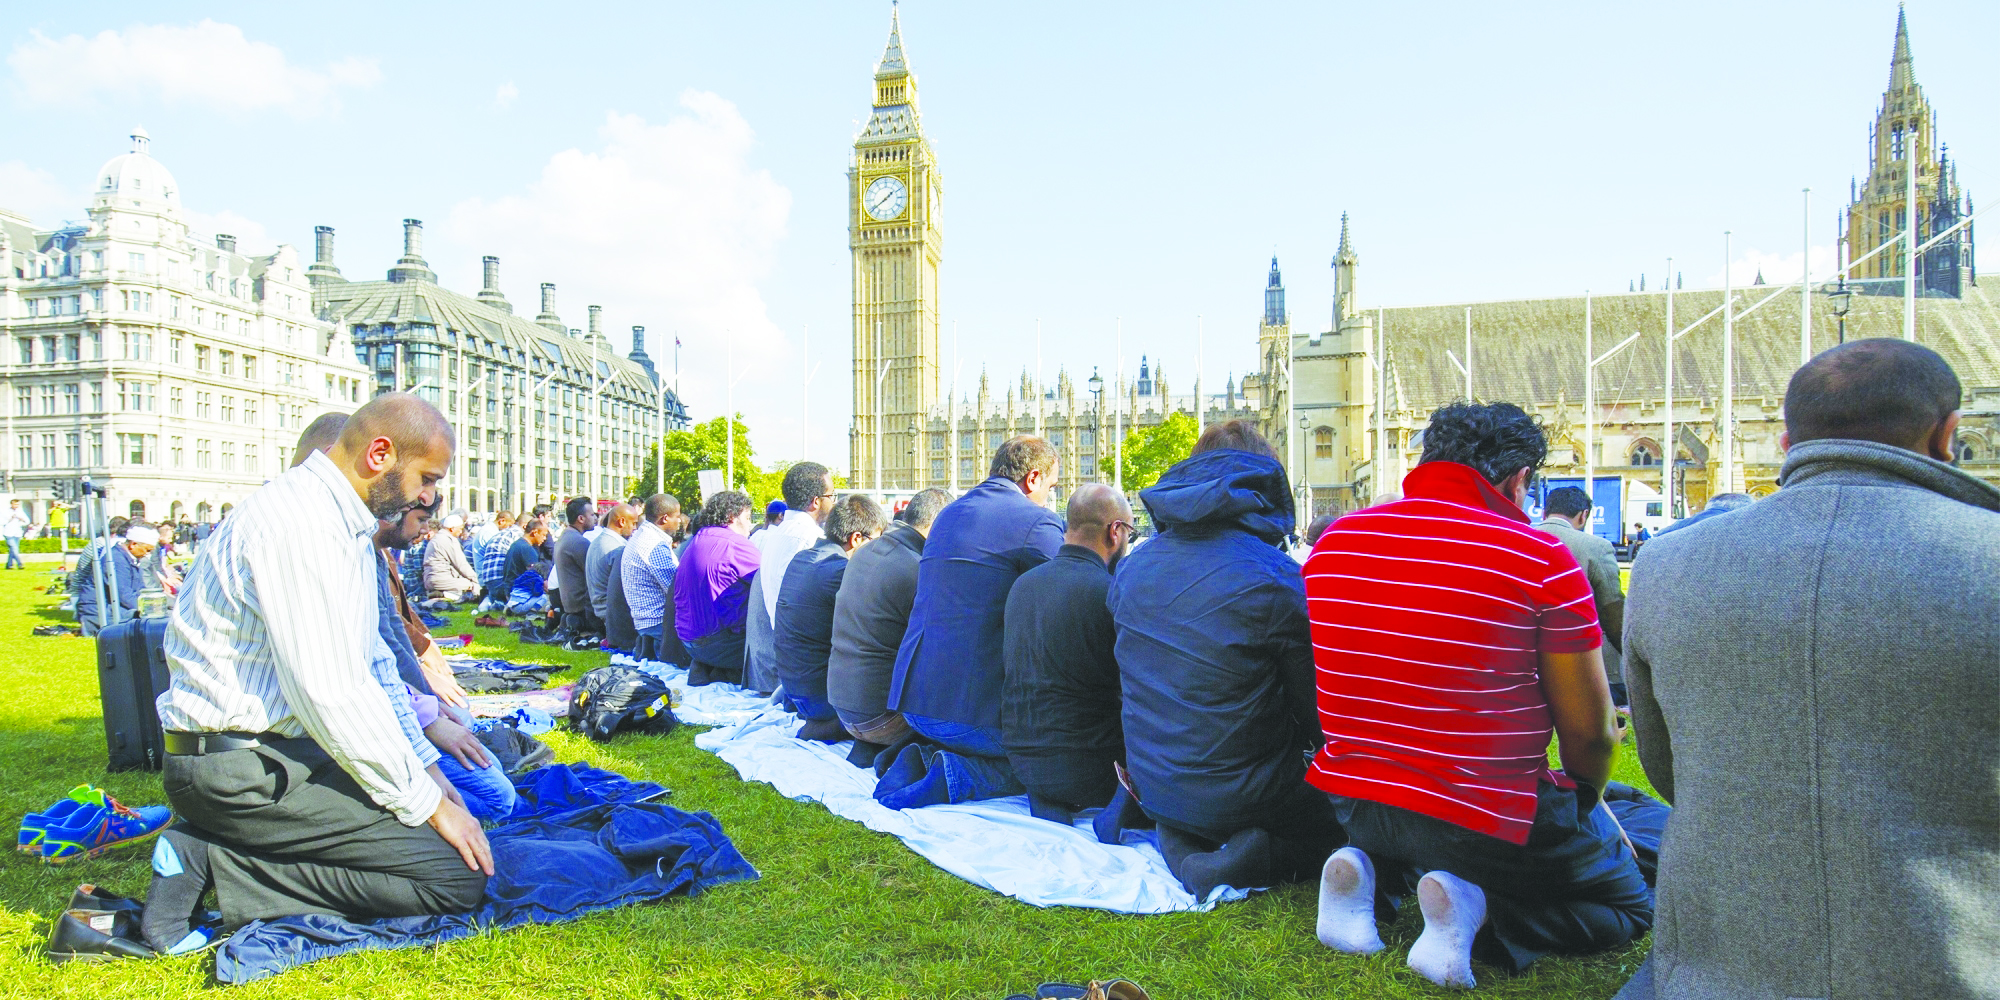 حول حقيقة التطرف في أوروبا 

5 حقائق كشفها الهجوم على «مسجد لندن»